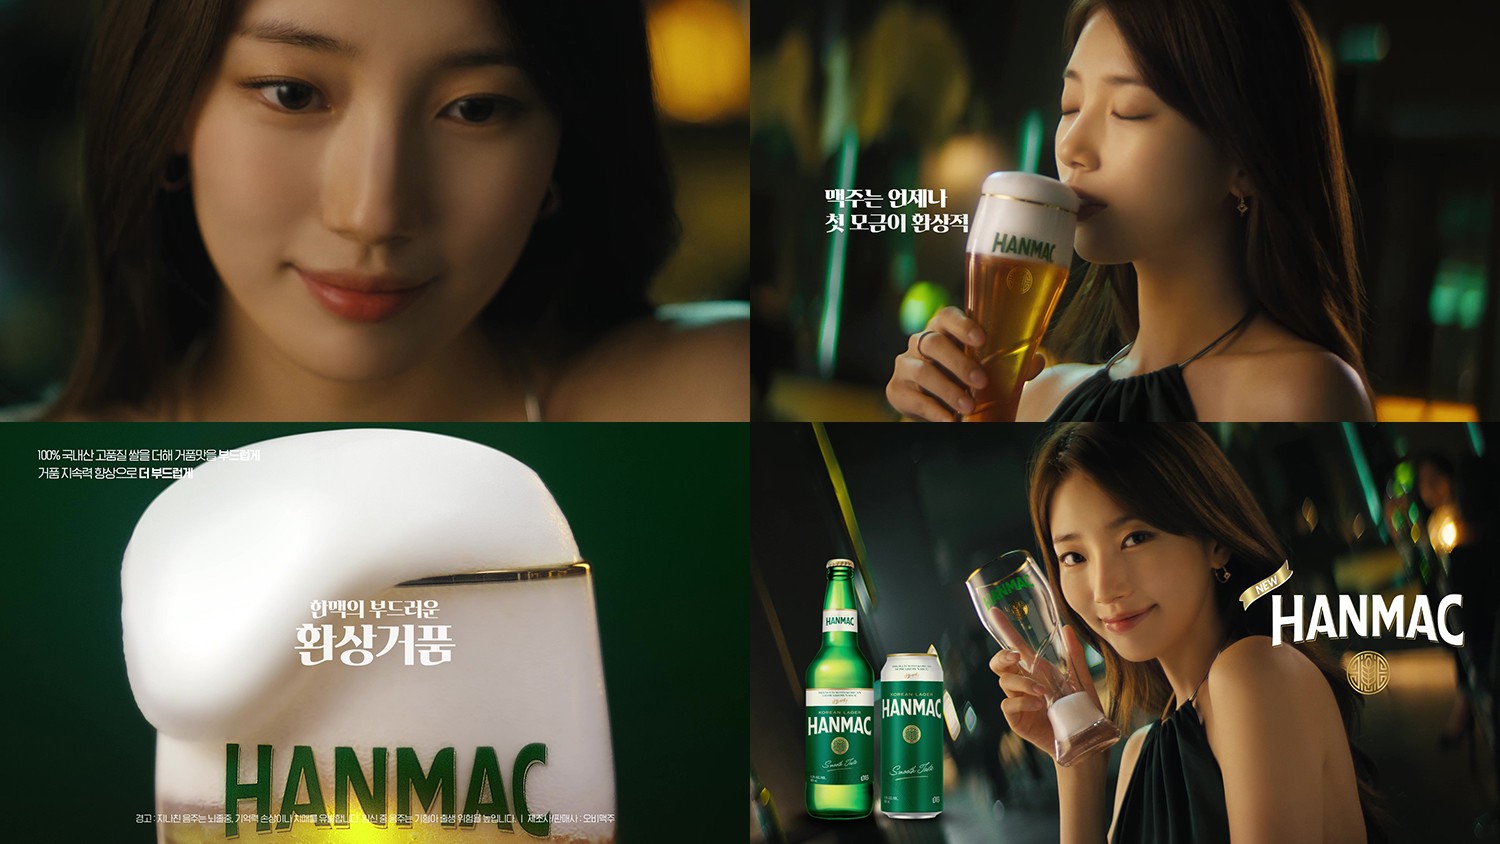 오비맥주 한맥, 수지와 함께한 '환상거품' TV 광고 공개